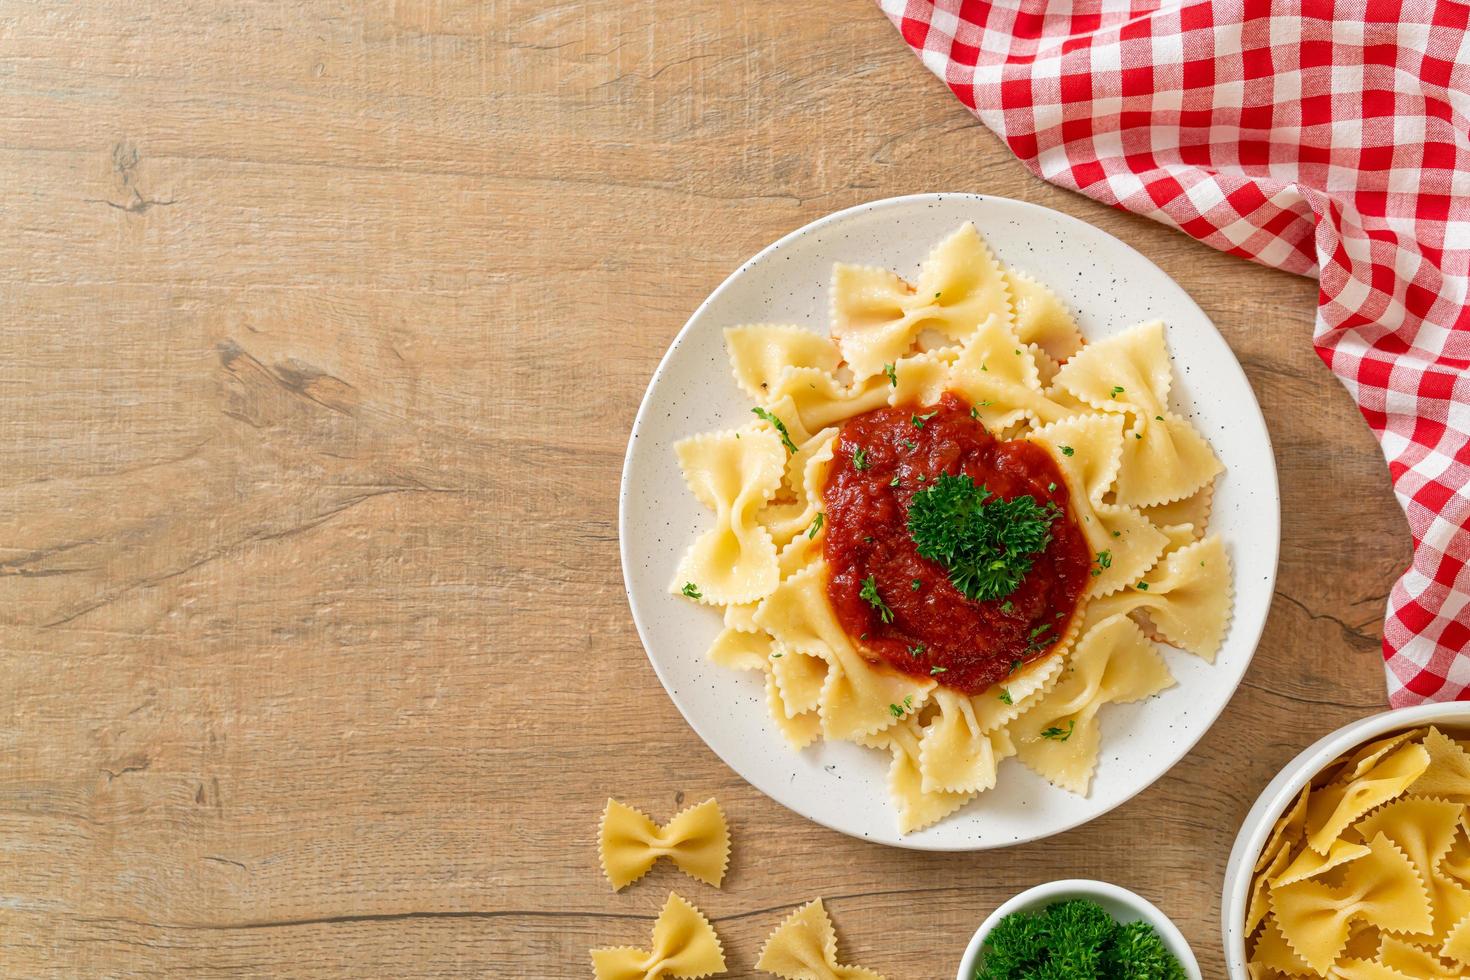 macarrão farfalle em molho de tomate com salsa - comida italiana foto